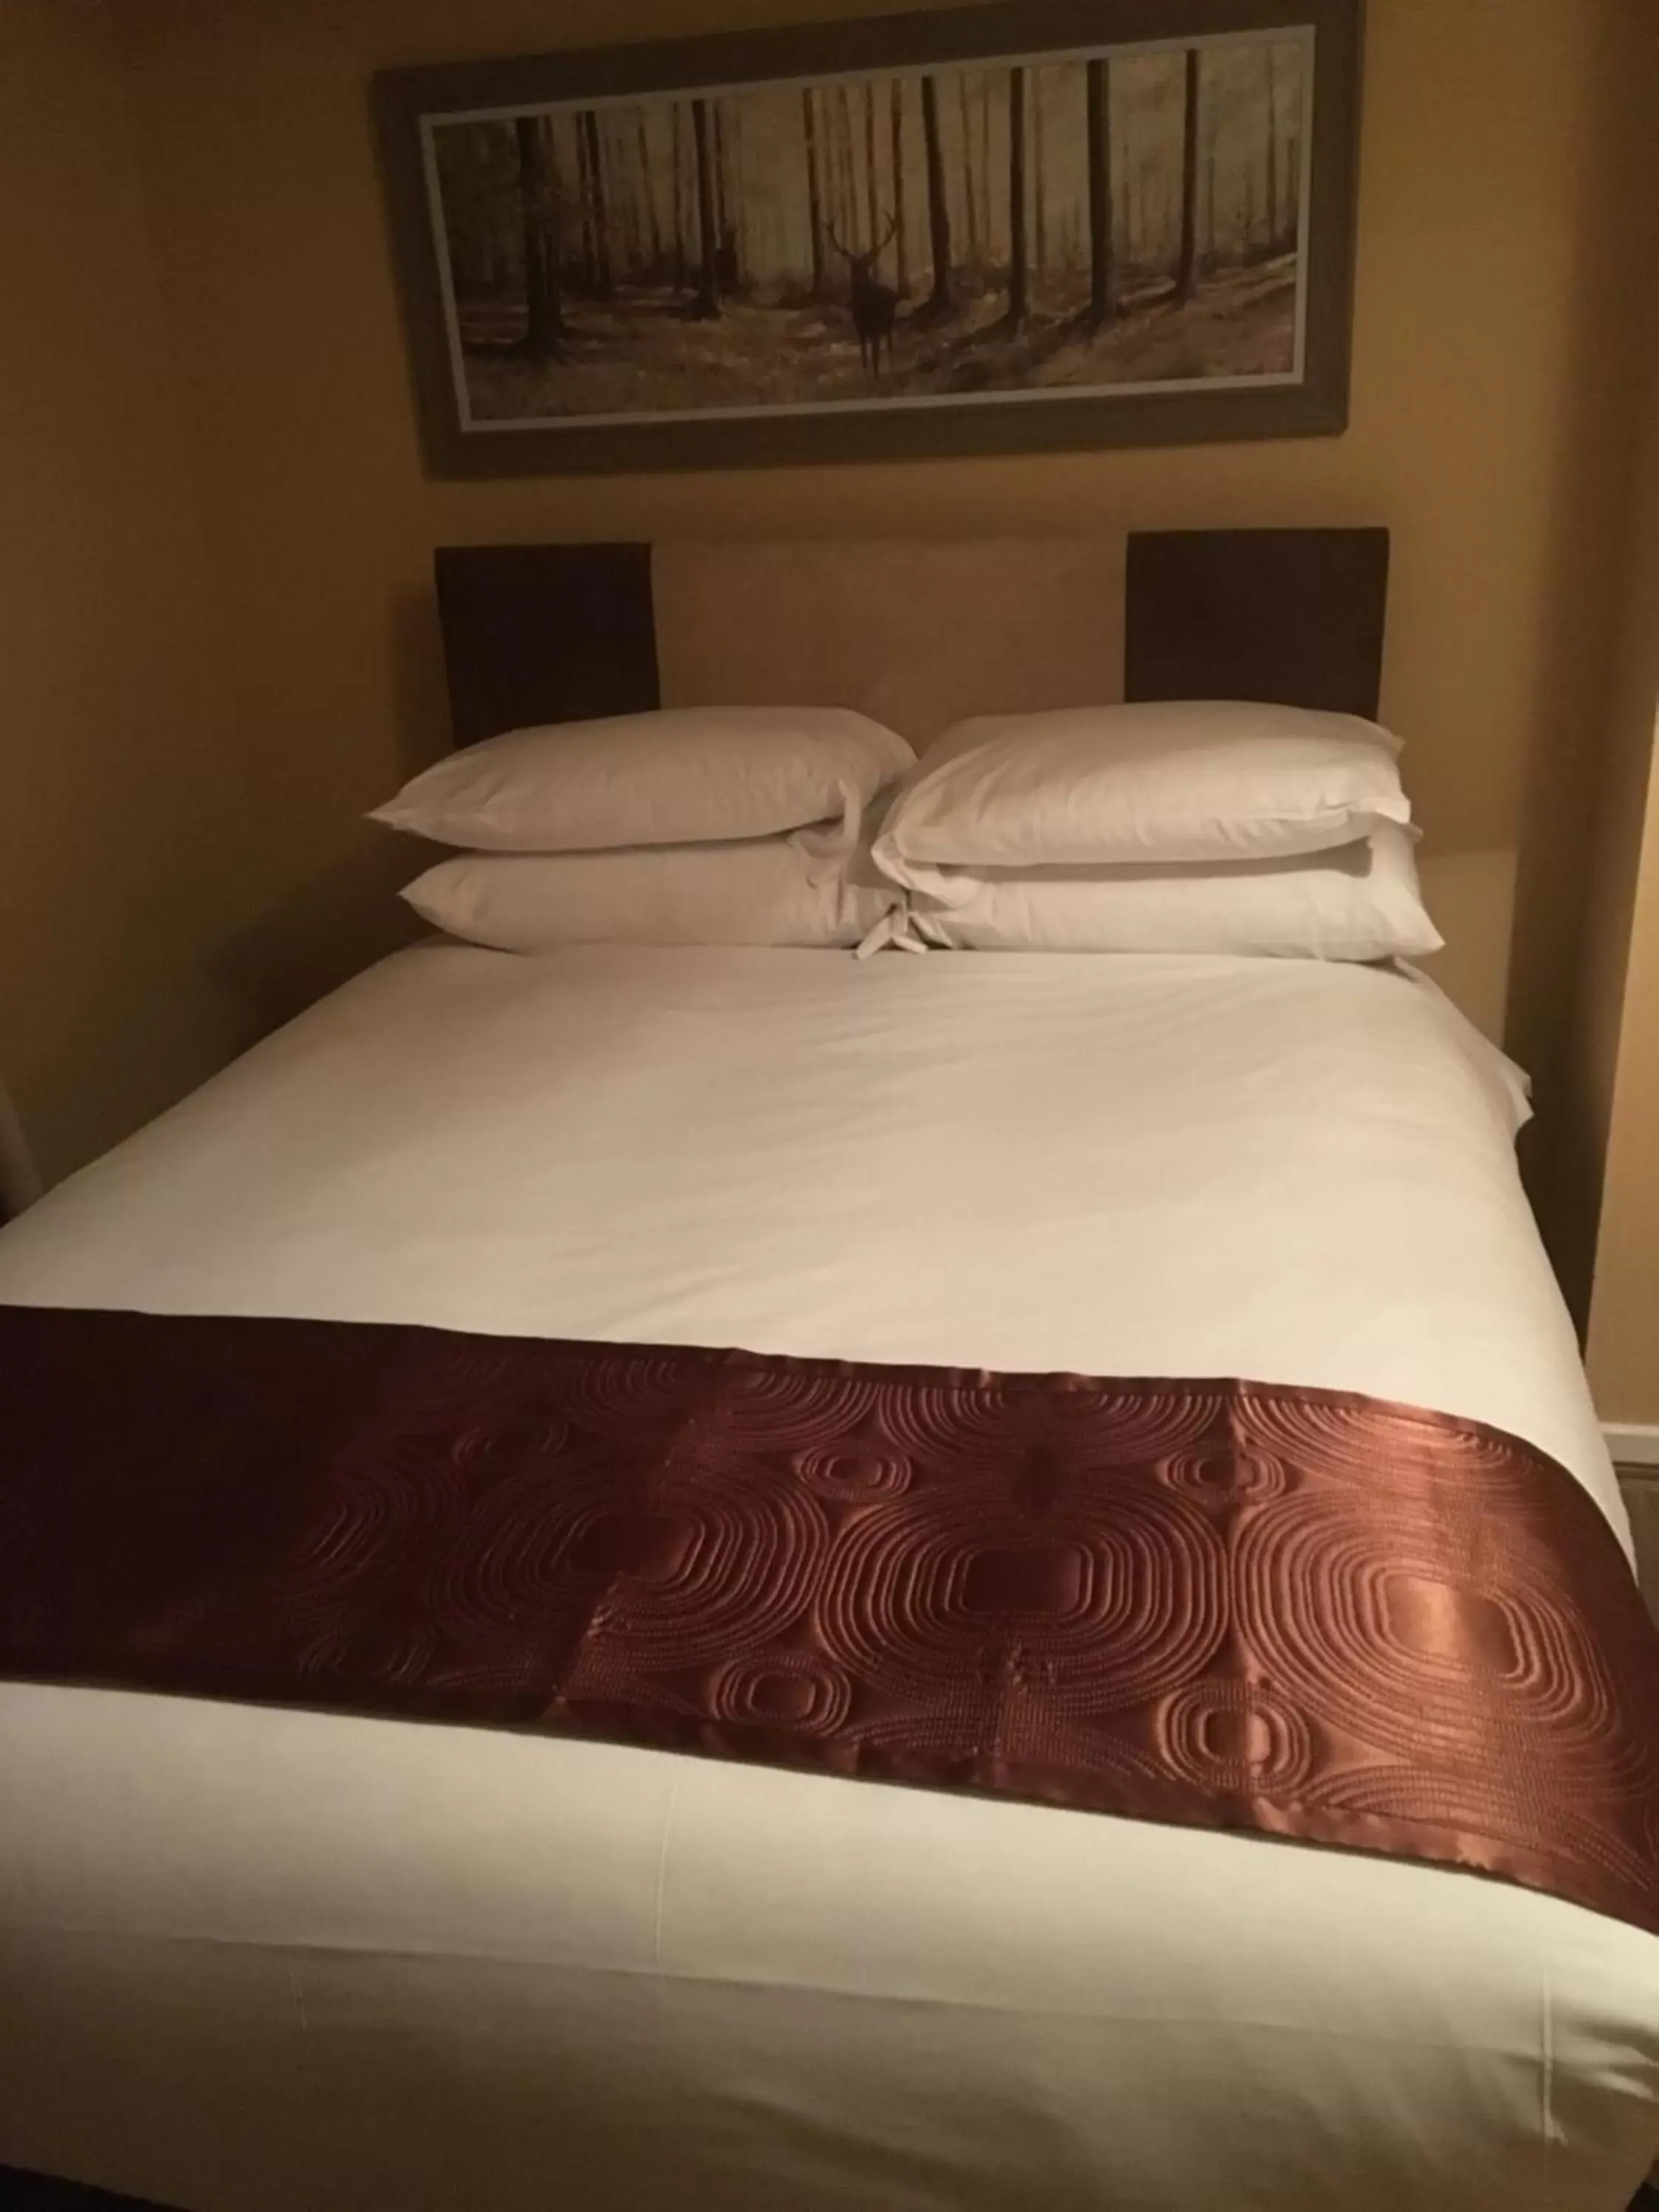 Bed in The Ynyscedwyn Arms Hotel